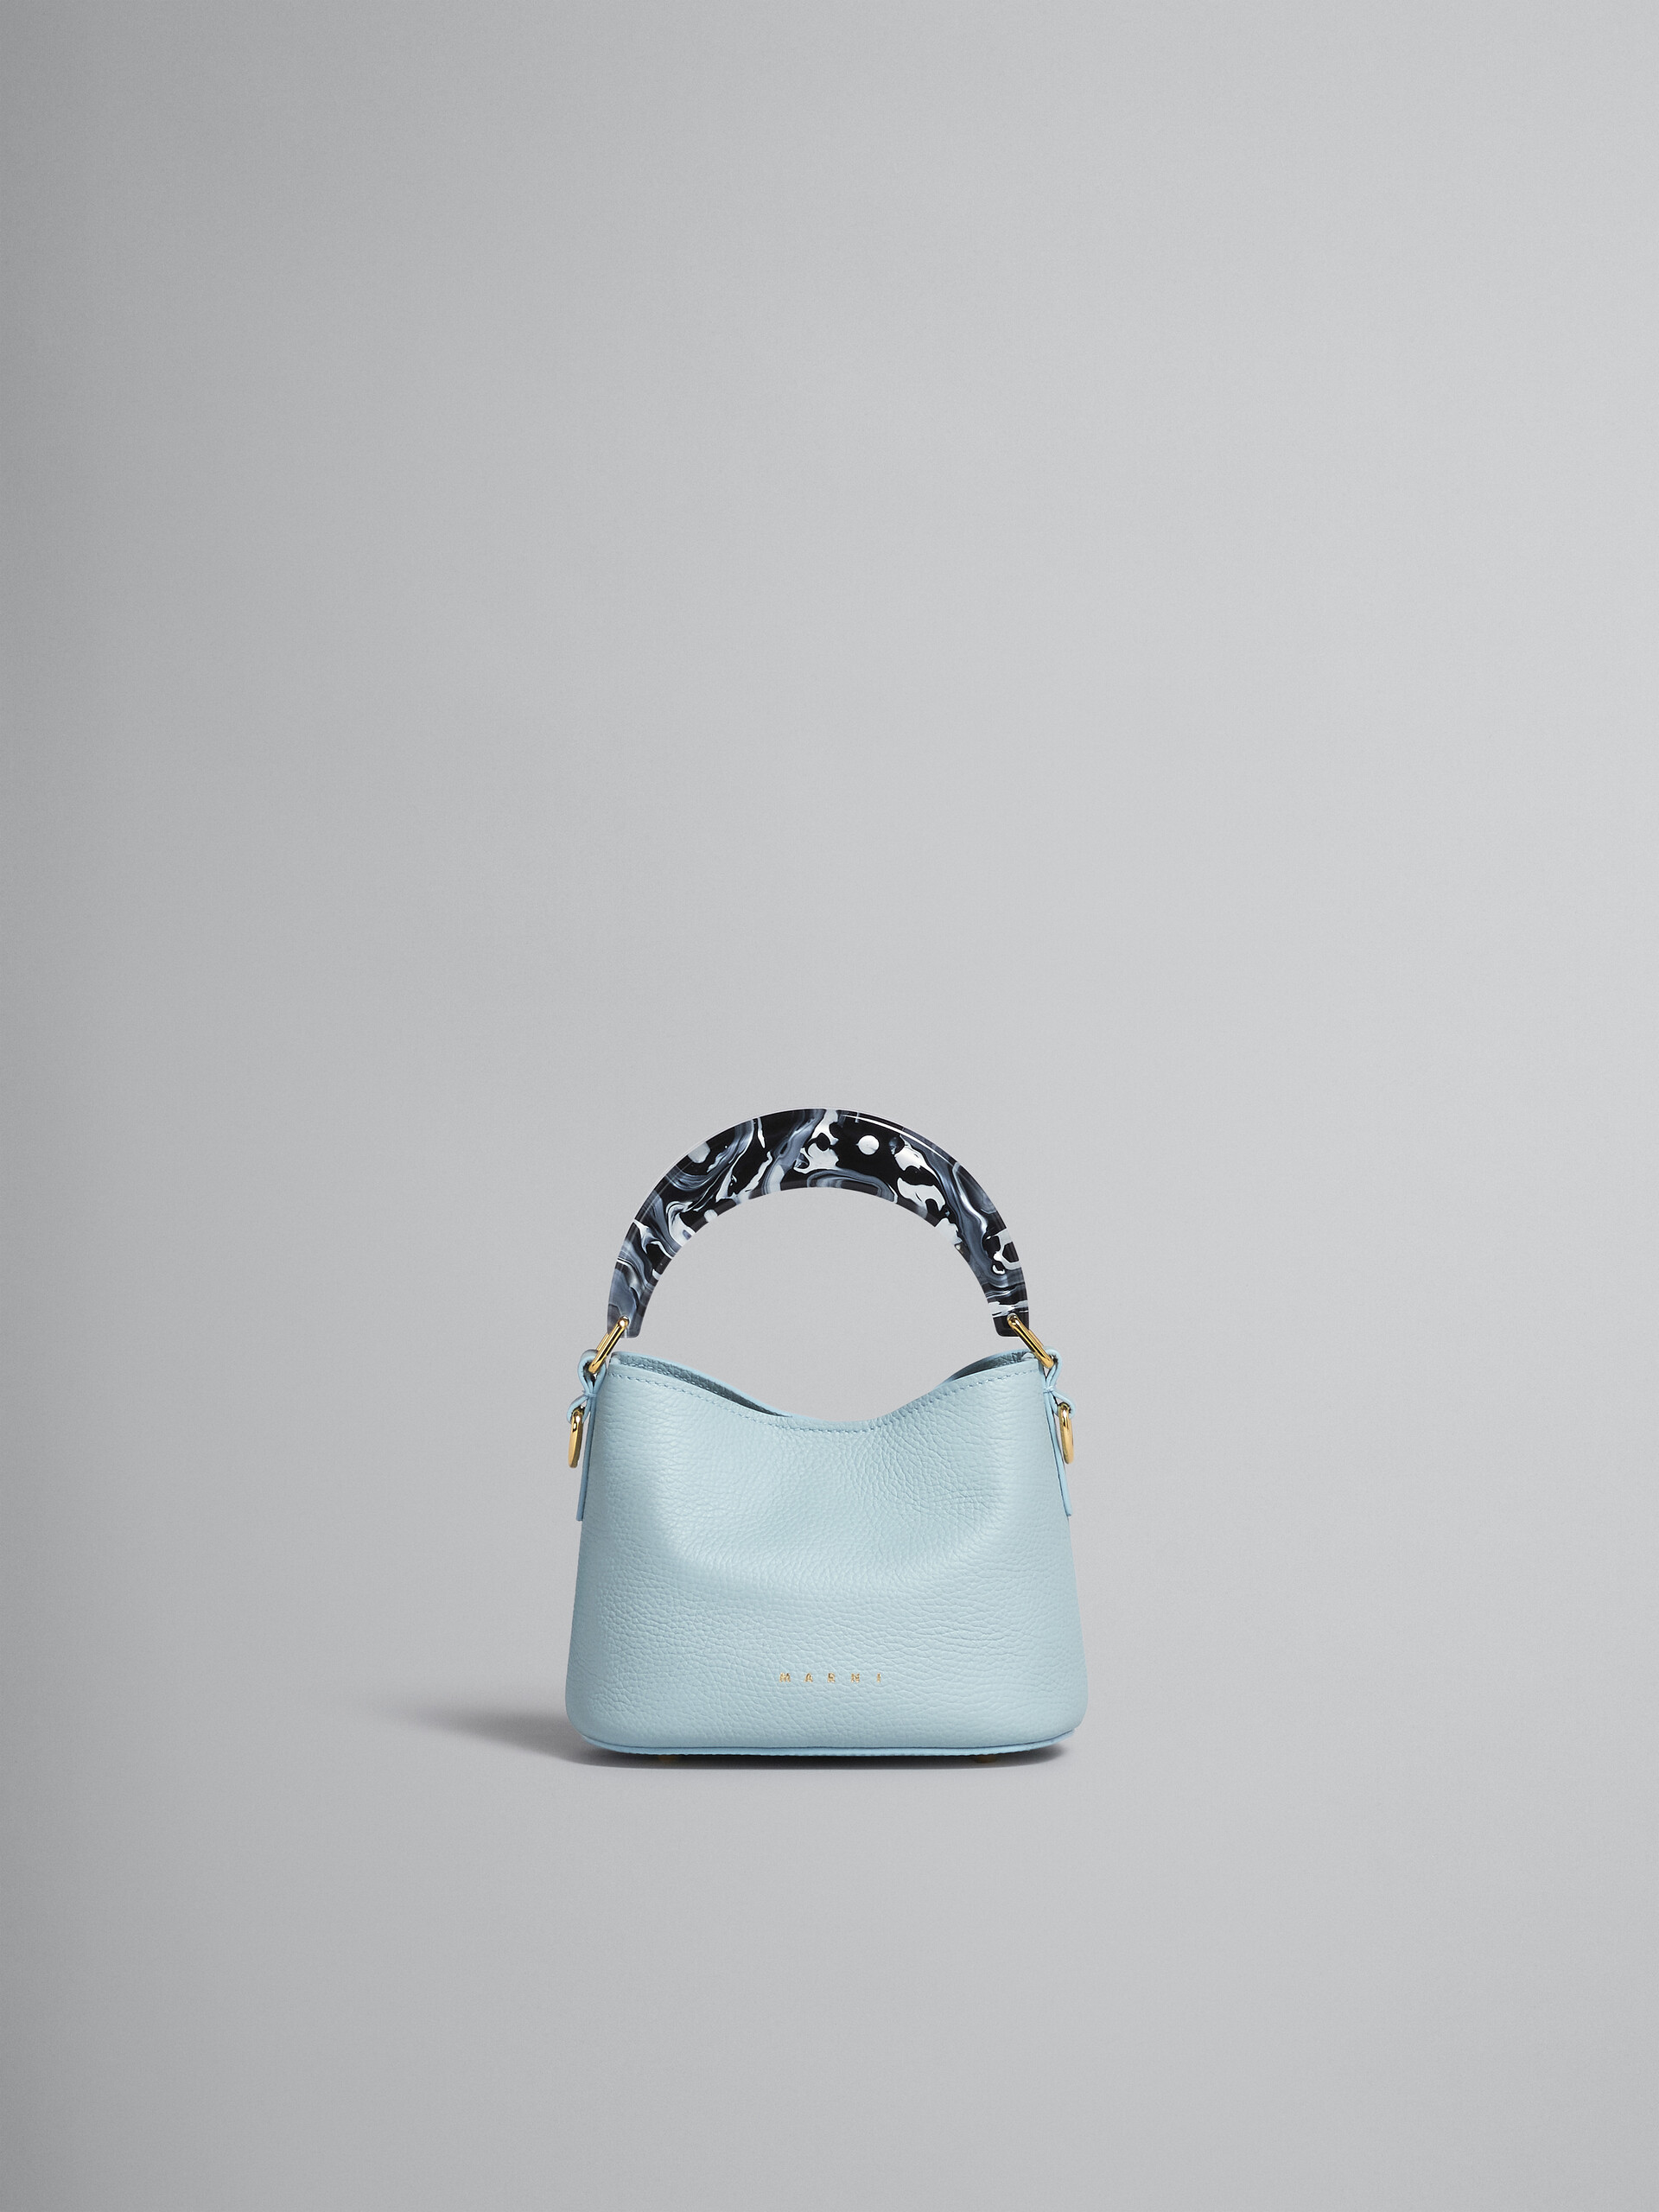 Venice Mini Bucket Bag in light blue leather - Shoulder Bag - Image 1